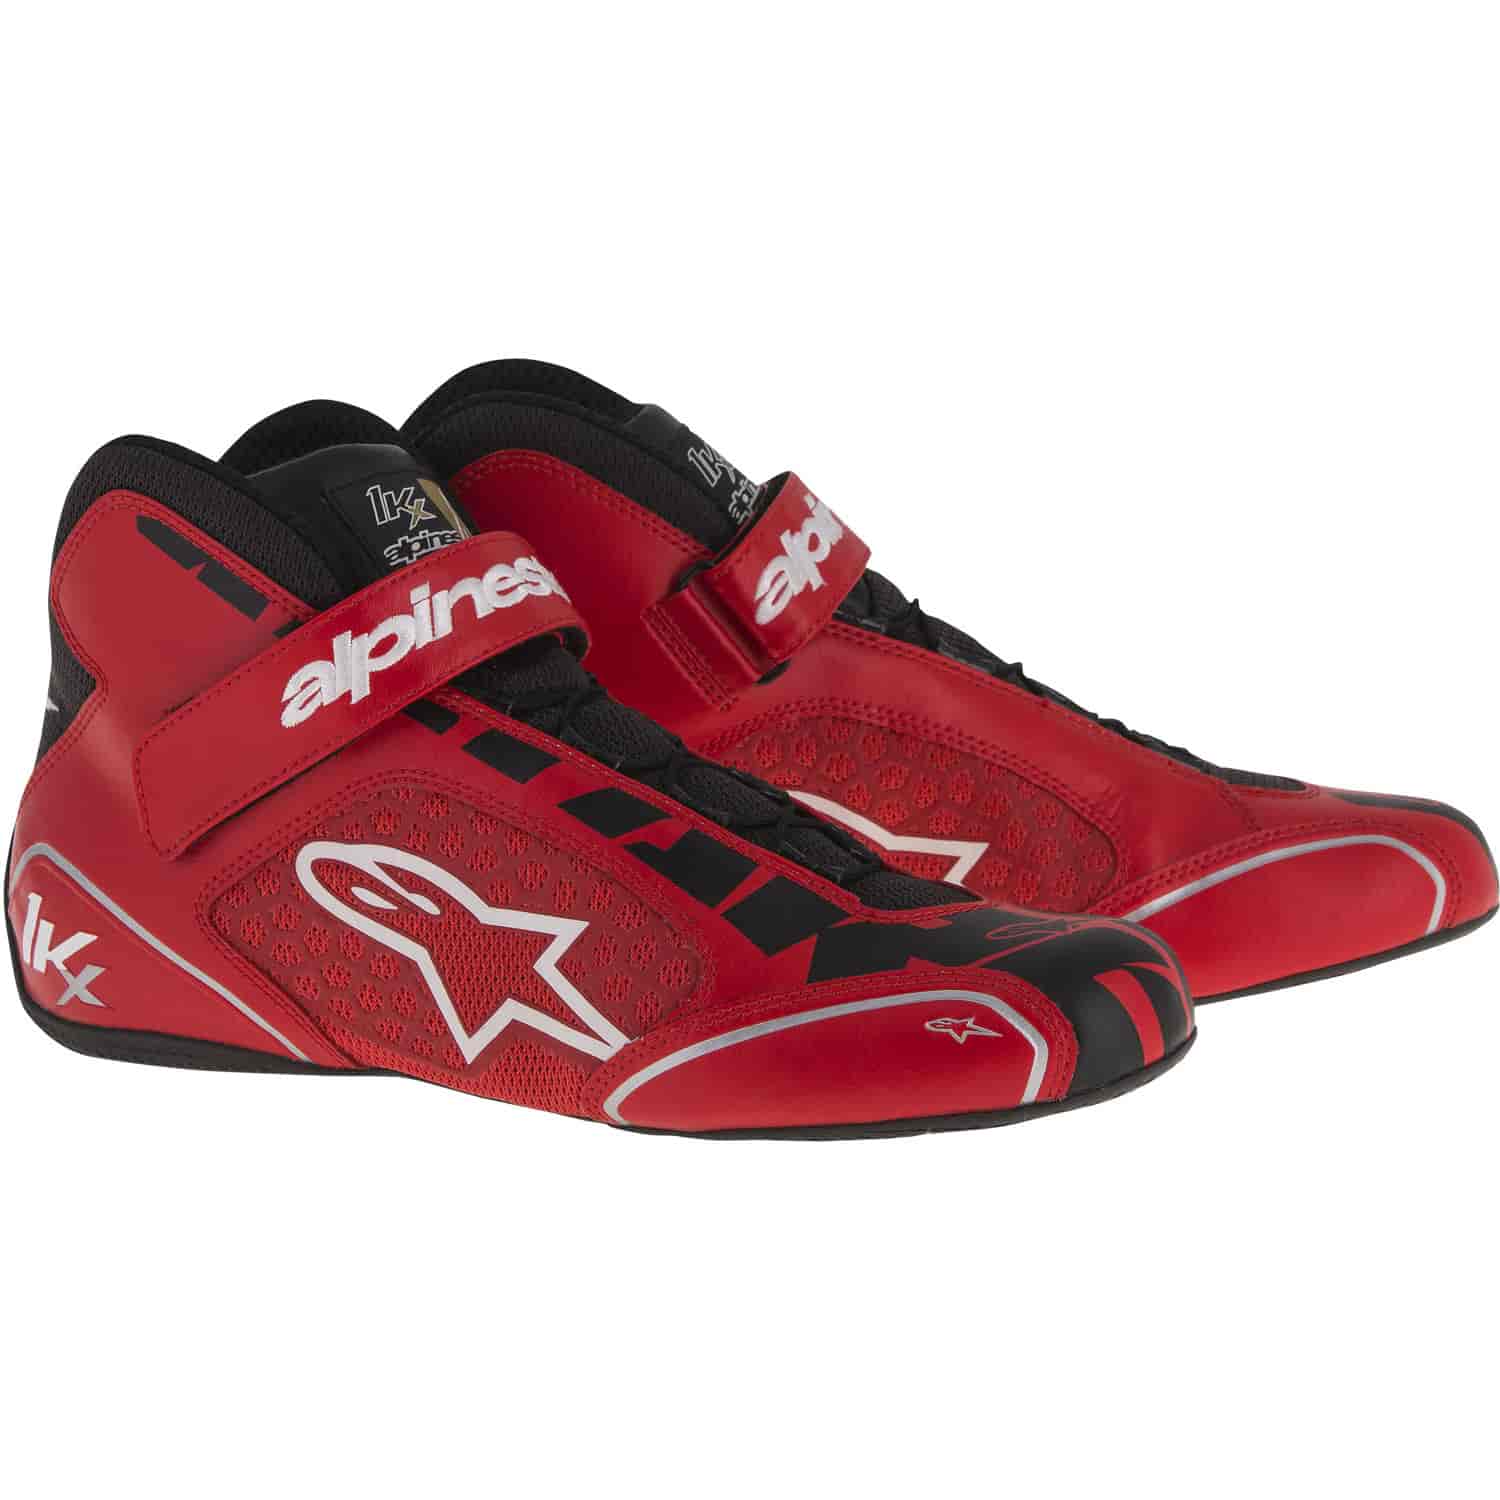 Tech 1-KX Shoes Red/Black/White